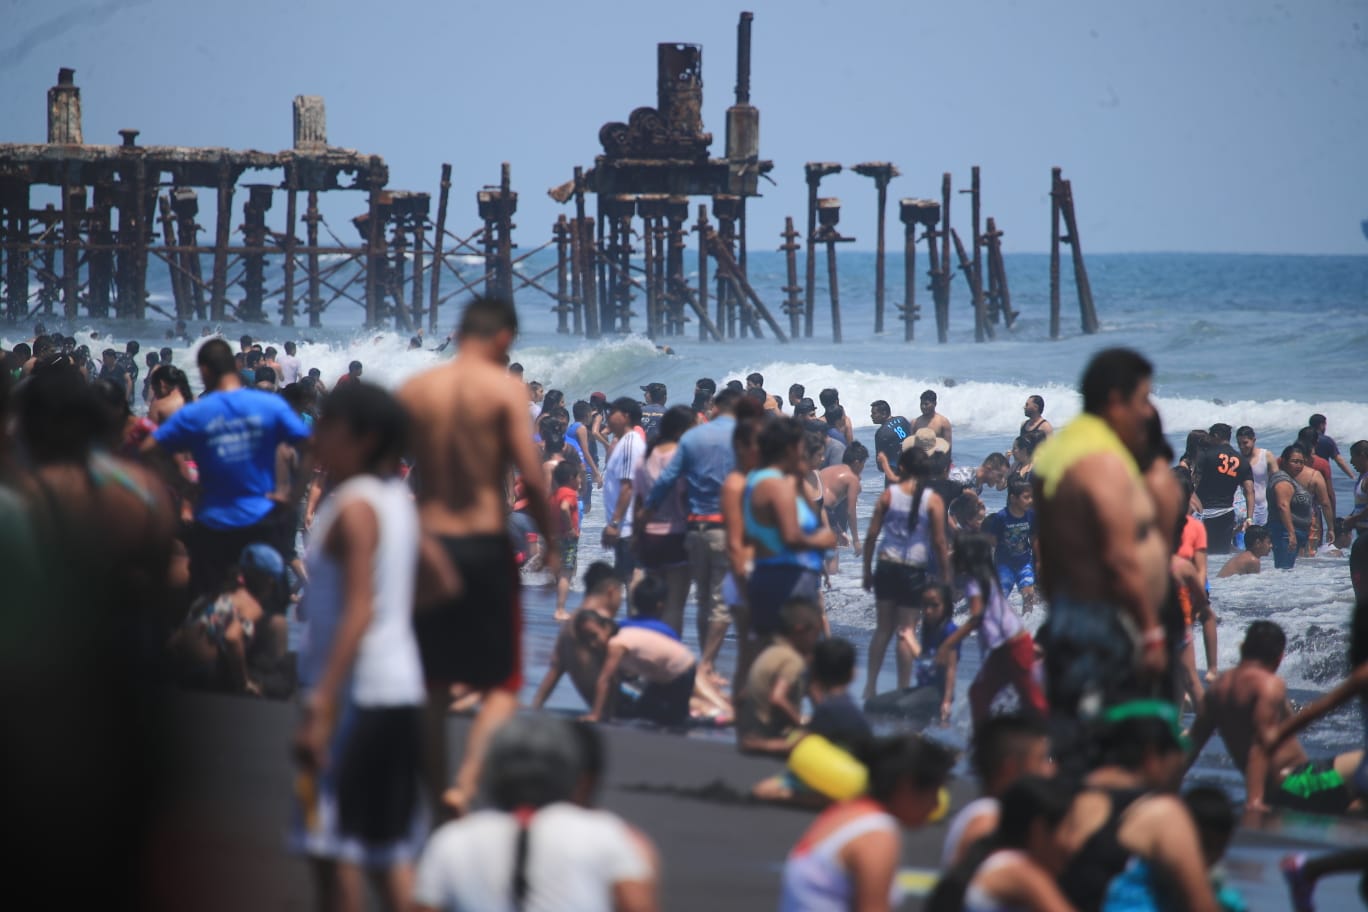 Desde la tarde del sábado cientos de veraneantes abarrotaron la playa pública del Puerto de San José, número que incrementó este Domingo de Ramos